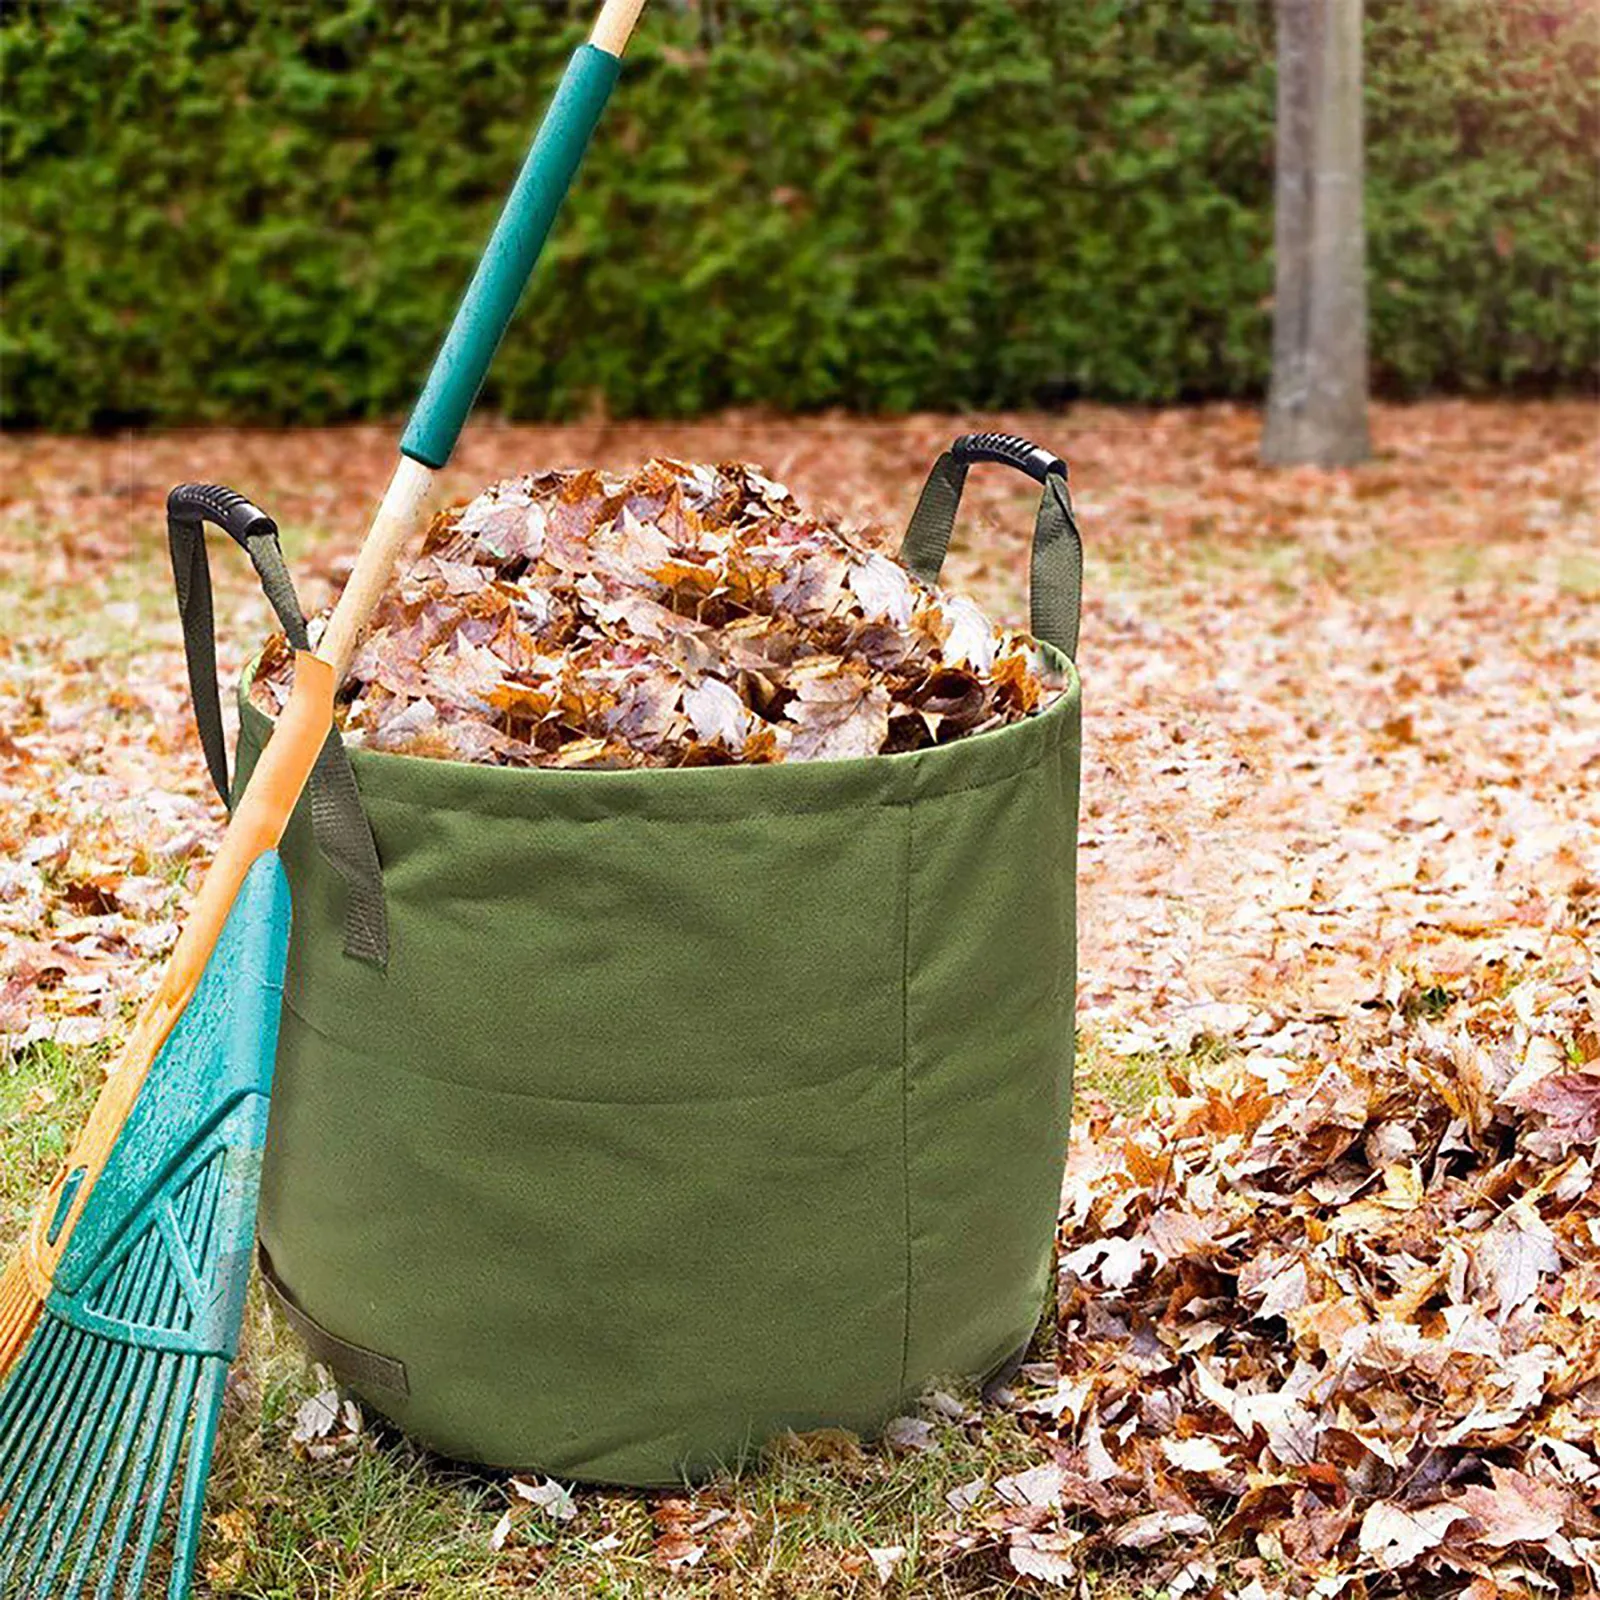 Details about   Garbage Storage Trash Bag Portable Collapsible Garden Leaf Trash Can Bin 